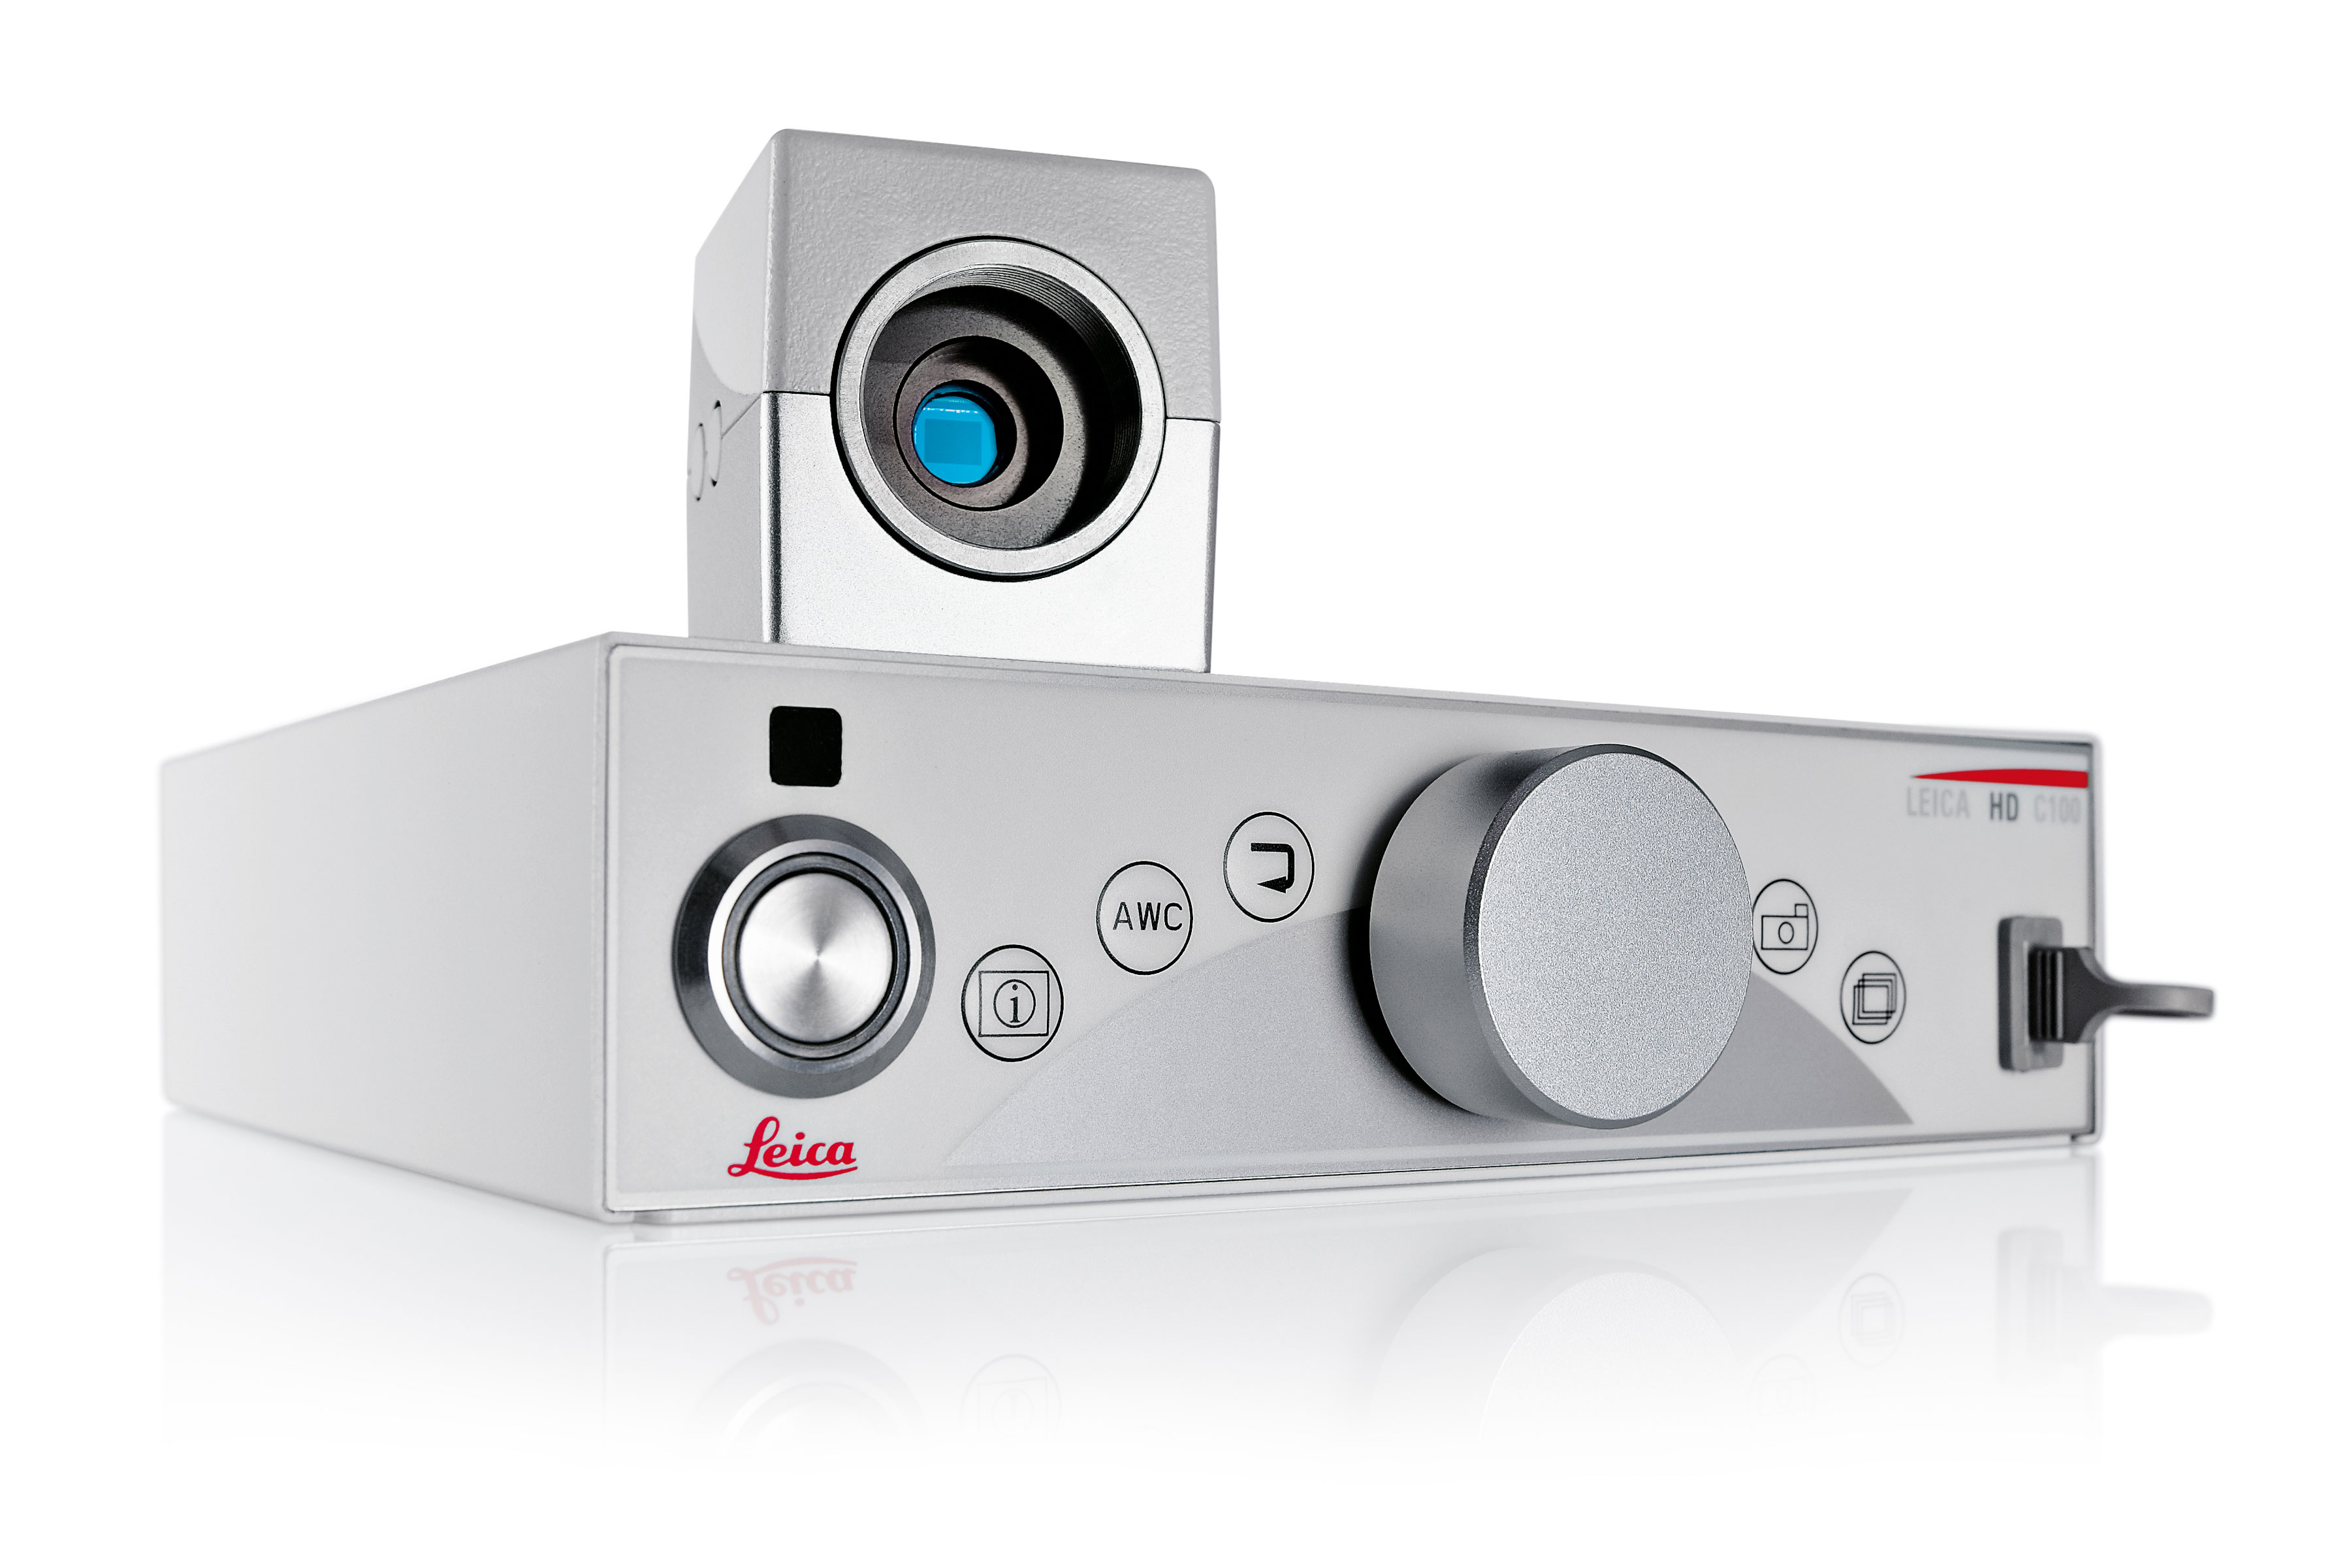 Câmera médica Leica HD C100 com resolução em HD e SD, com interface de usuário intuitiva e transferência para dispositivos externos de armazenamento rápida e fácil.